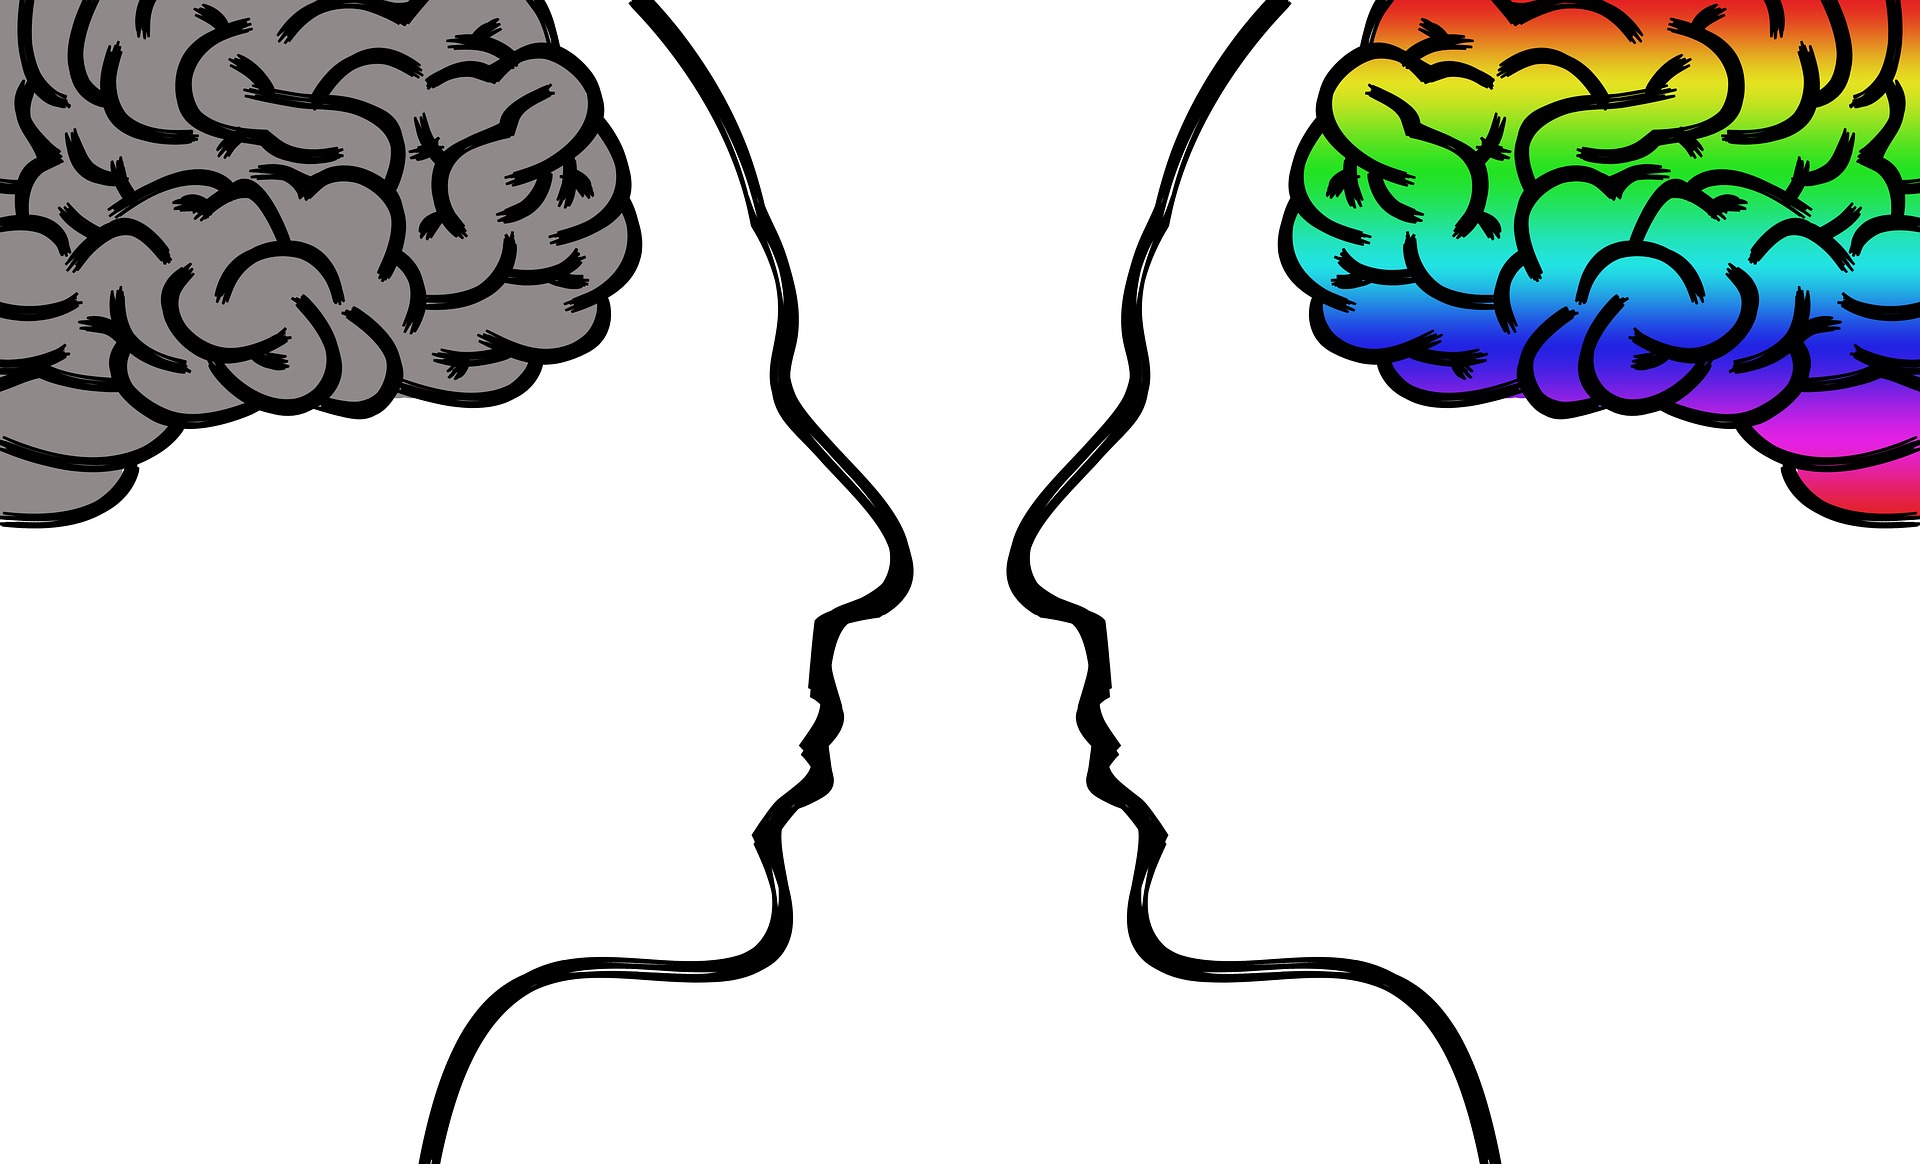 ¿Qué es la inteligencia emocional?